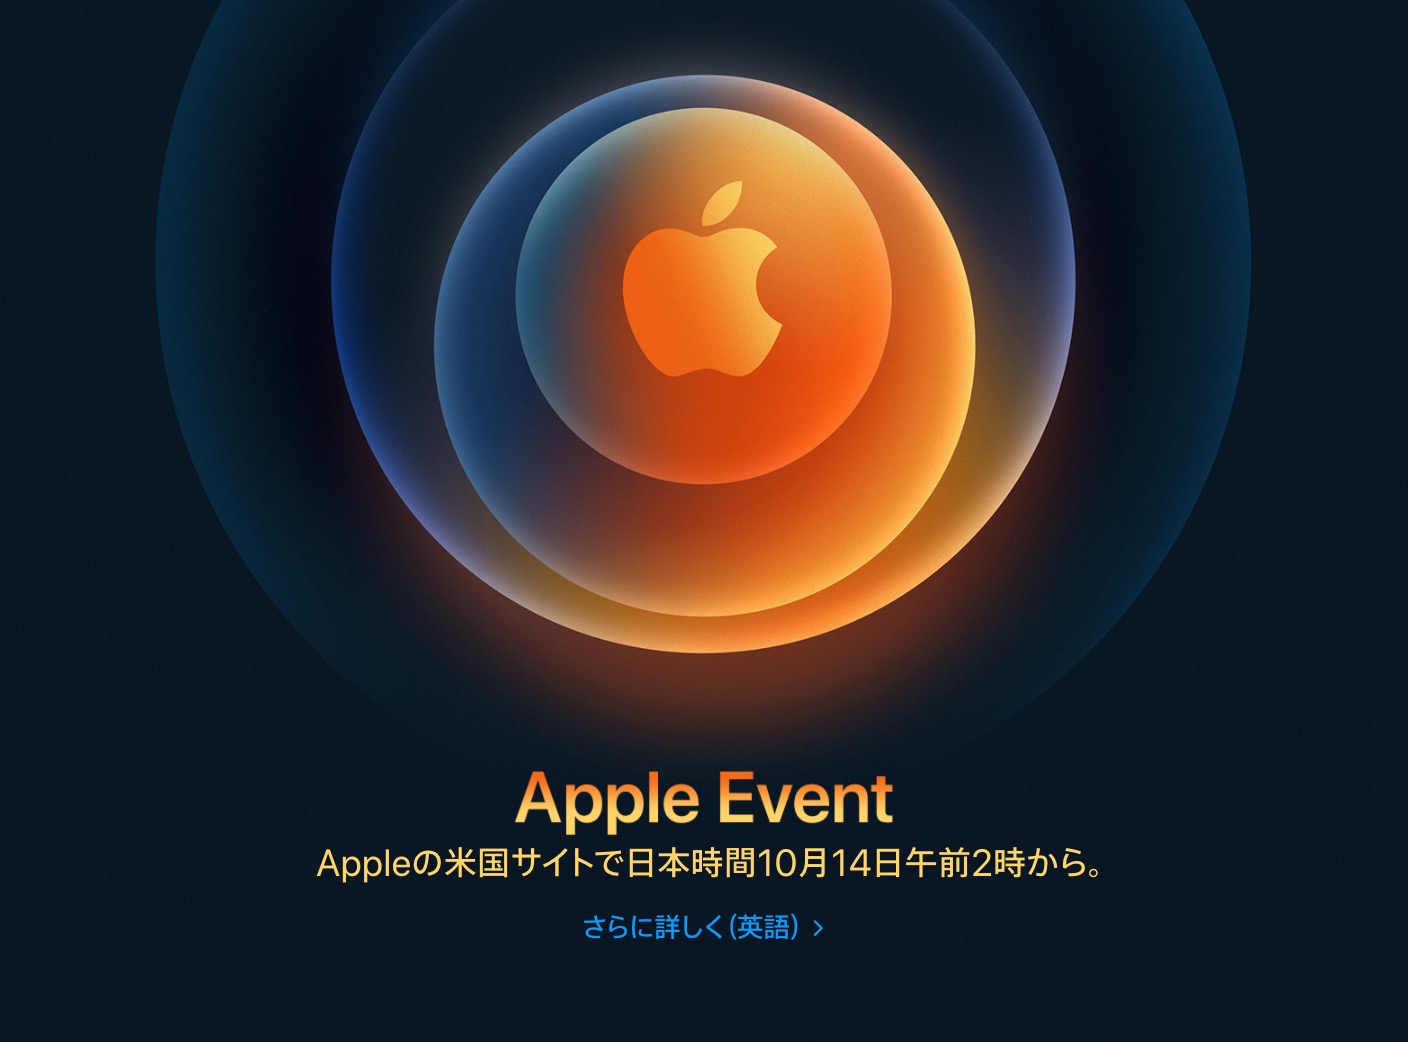 iPhone 12発表イベント開催決定